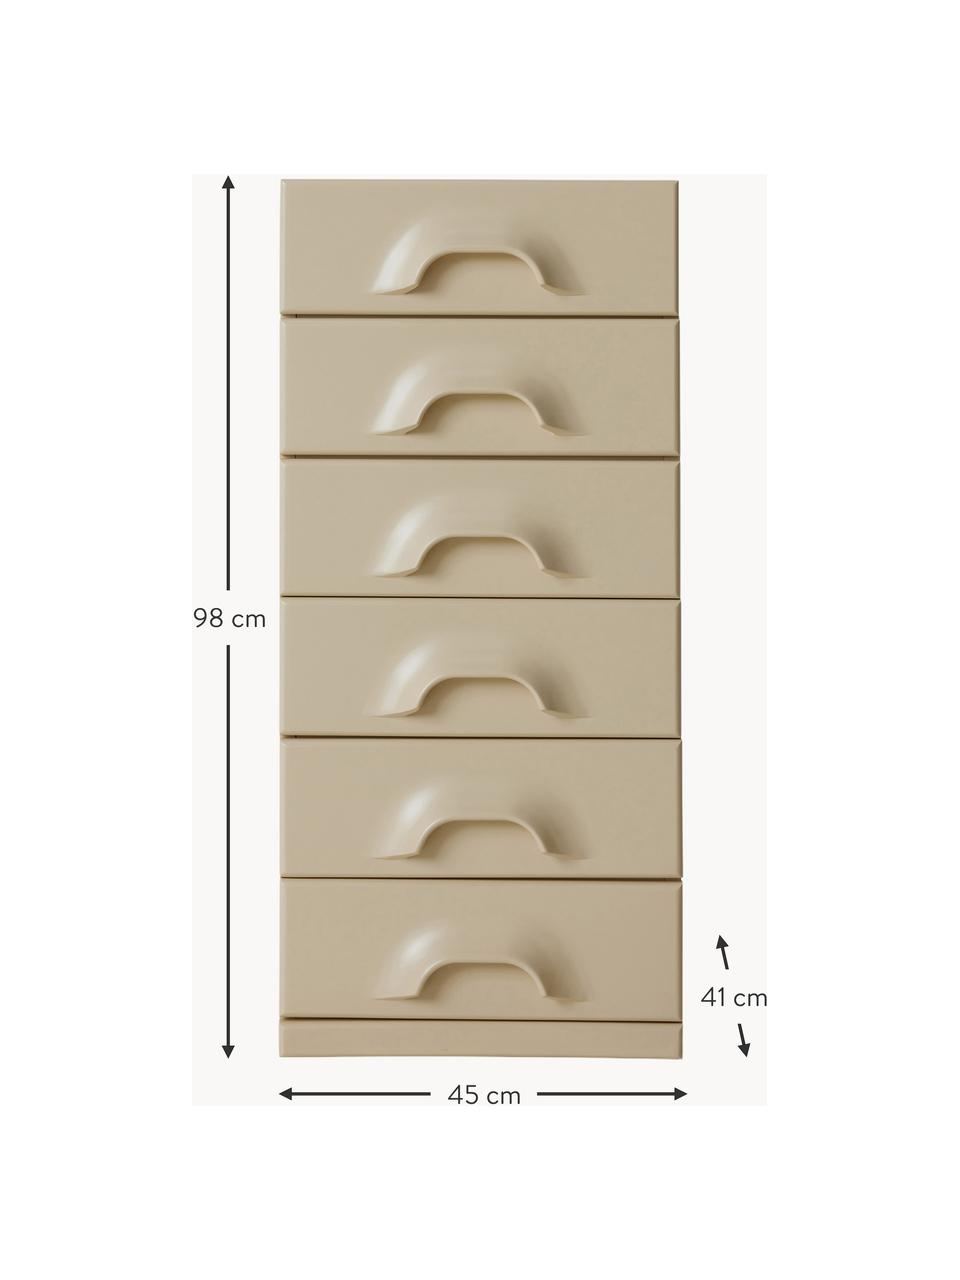 Vysoká skříňka Ginger, Dřevovláknitá deska střední hustoty (MDF), Krémová, melanž, Š 45 cm, V 98 cm